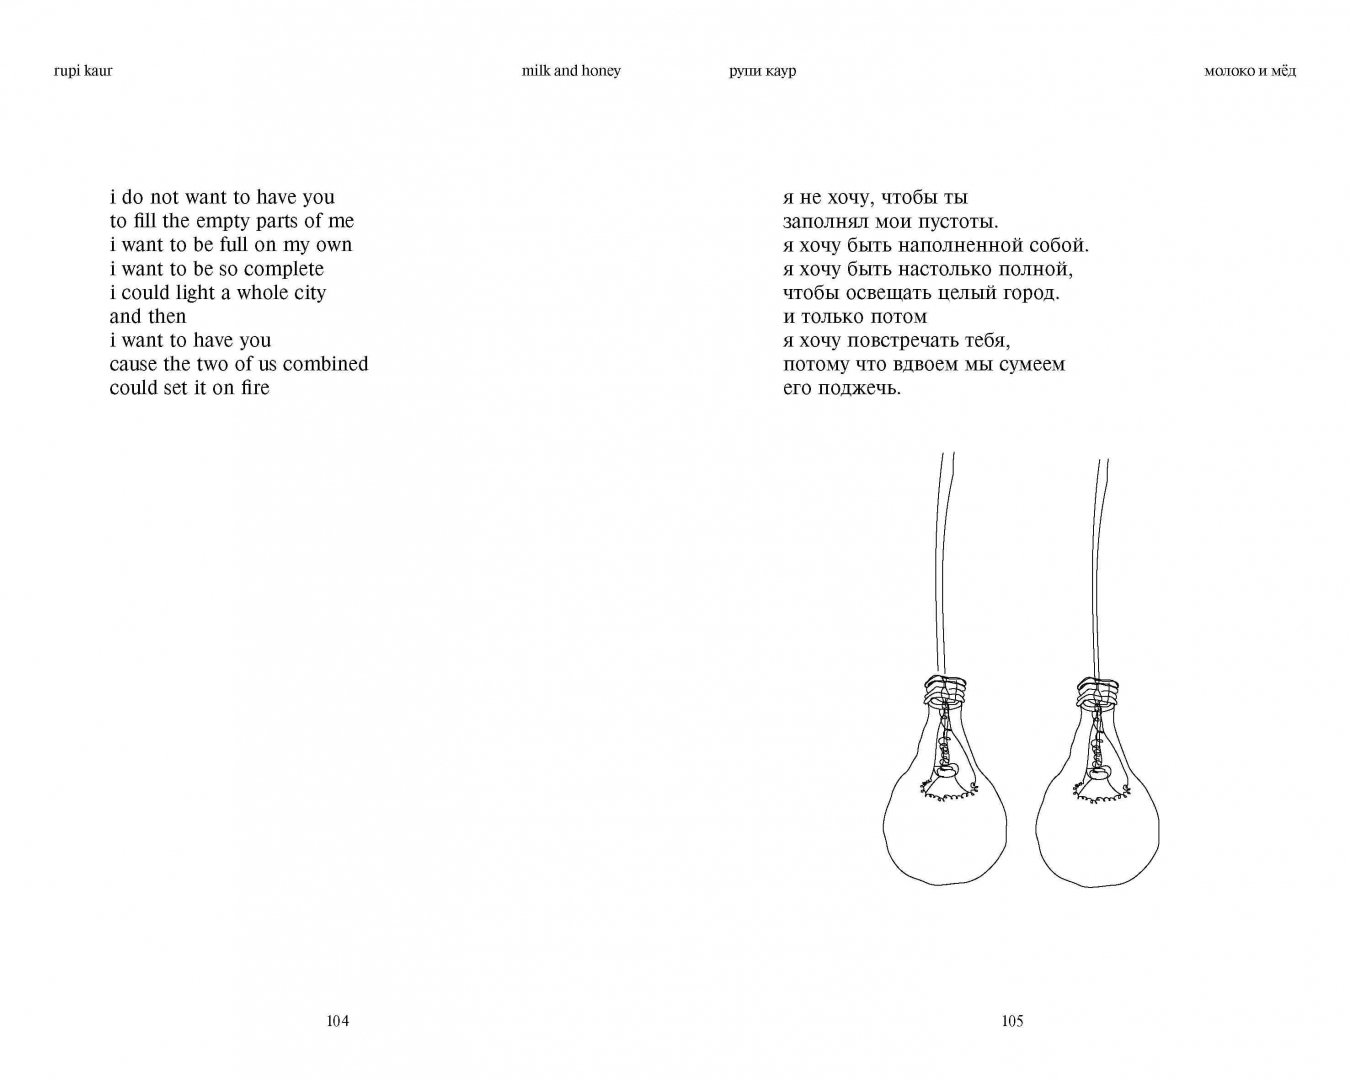 Иллюстрация 7 из 25 для Milk and Honey. Белые стихи, покорившие мир - Рупи Каур | Лабиринт - книги. Источник: Лабиринт